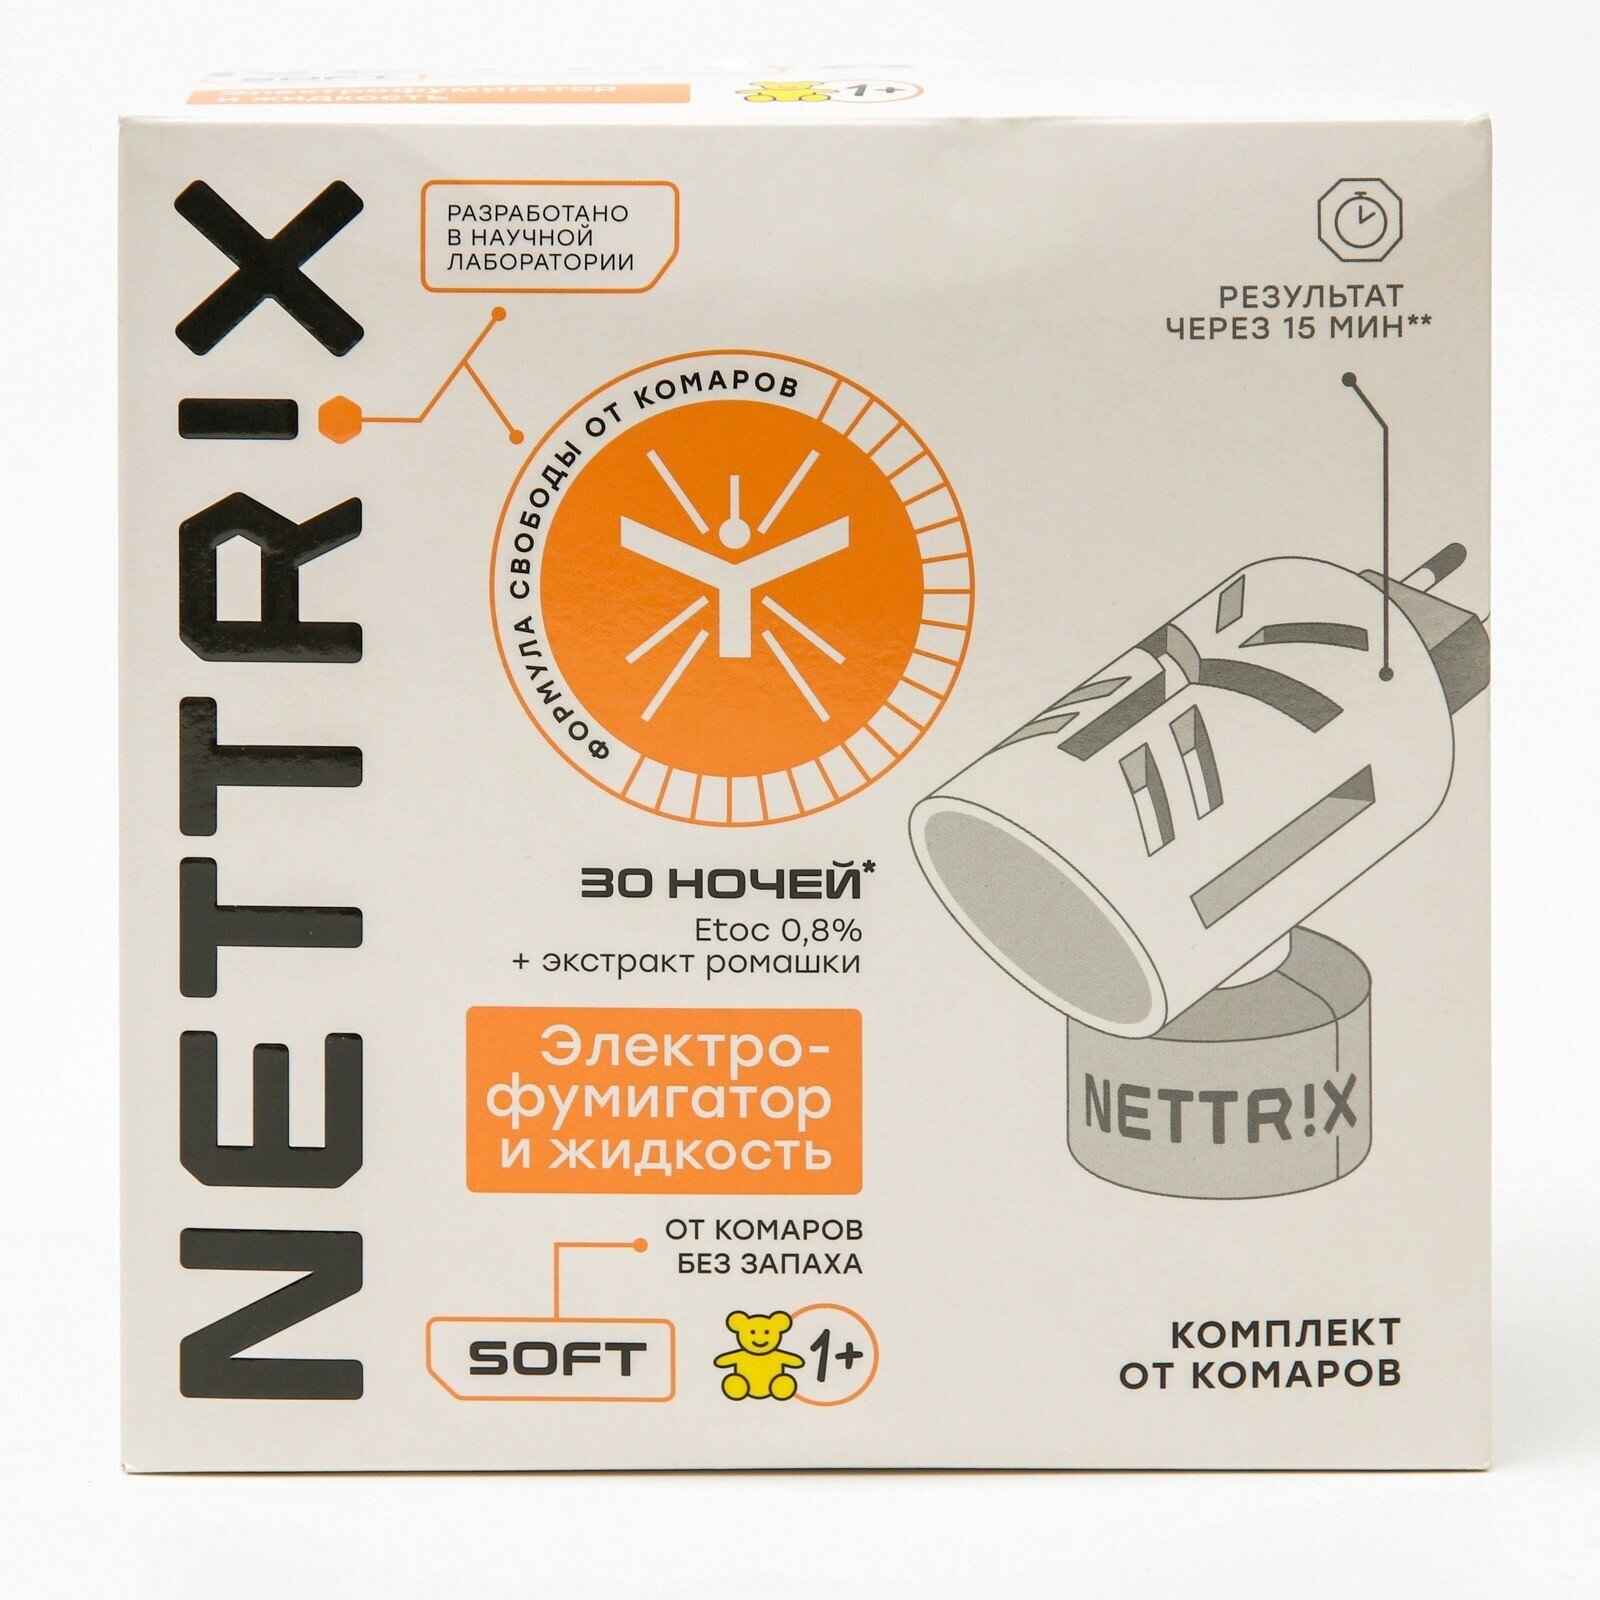 Комплект от комаров NETTRIX Soft электрофумигатор с жидкостью, 30 ночей - фото №8